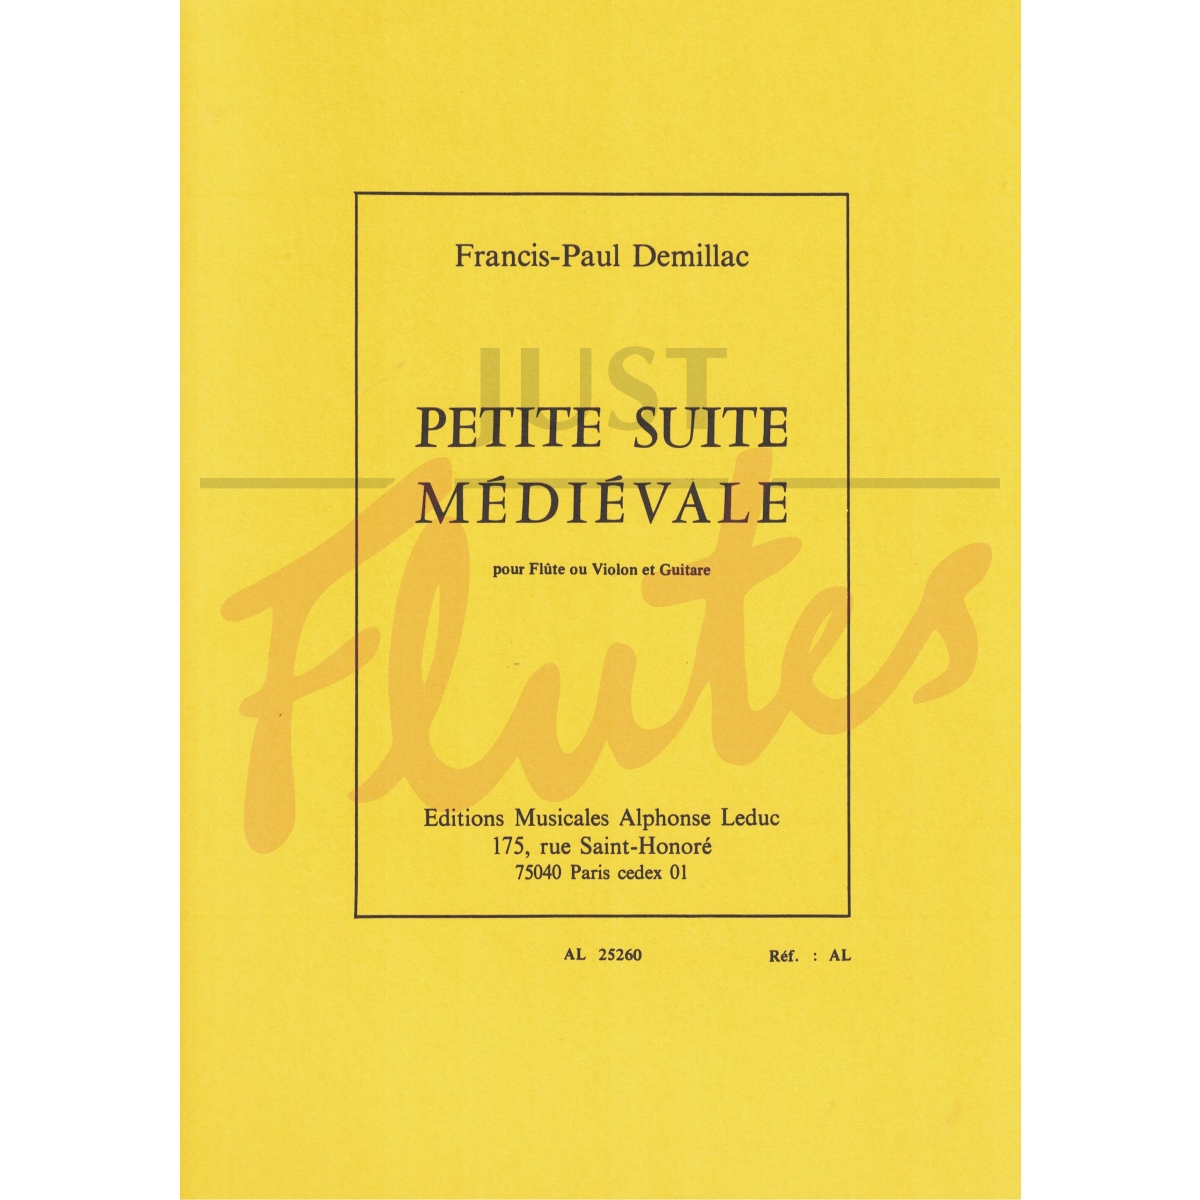 Petite Suite Medievale